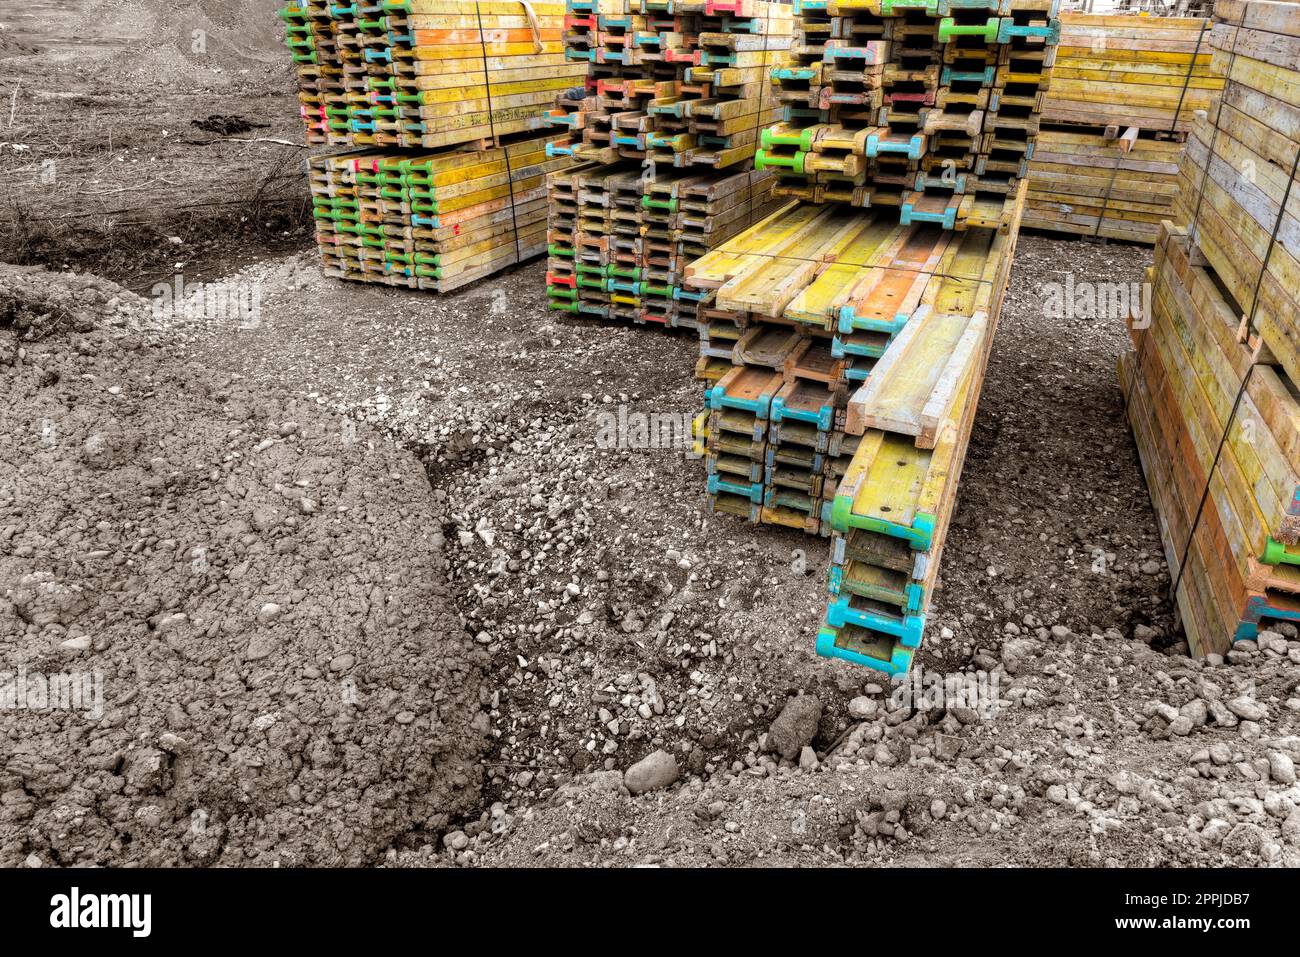 Farbenfrohe Bauhölzer liegen auf einer Baustelle gestapelt und sortiert Stockfoto